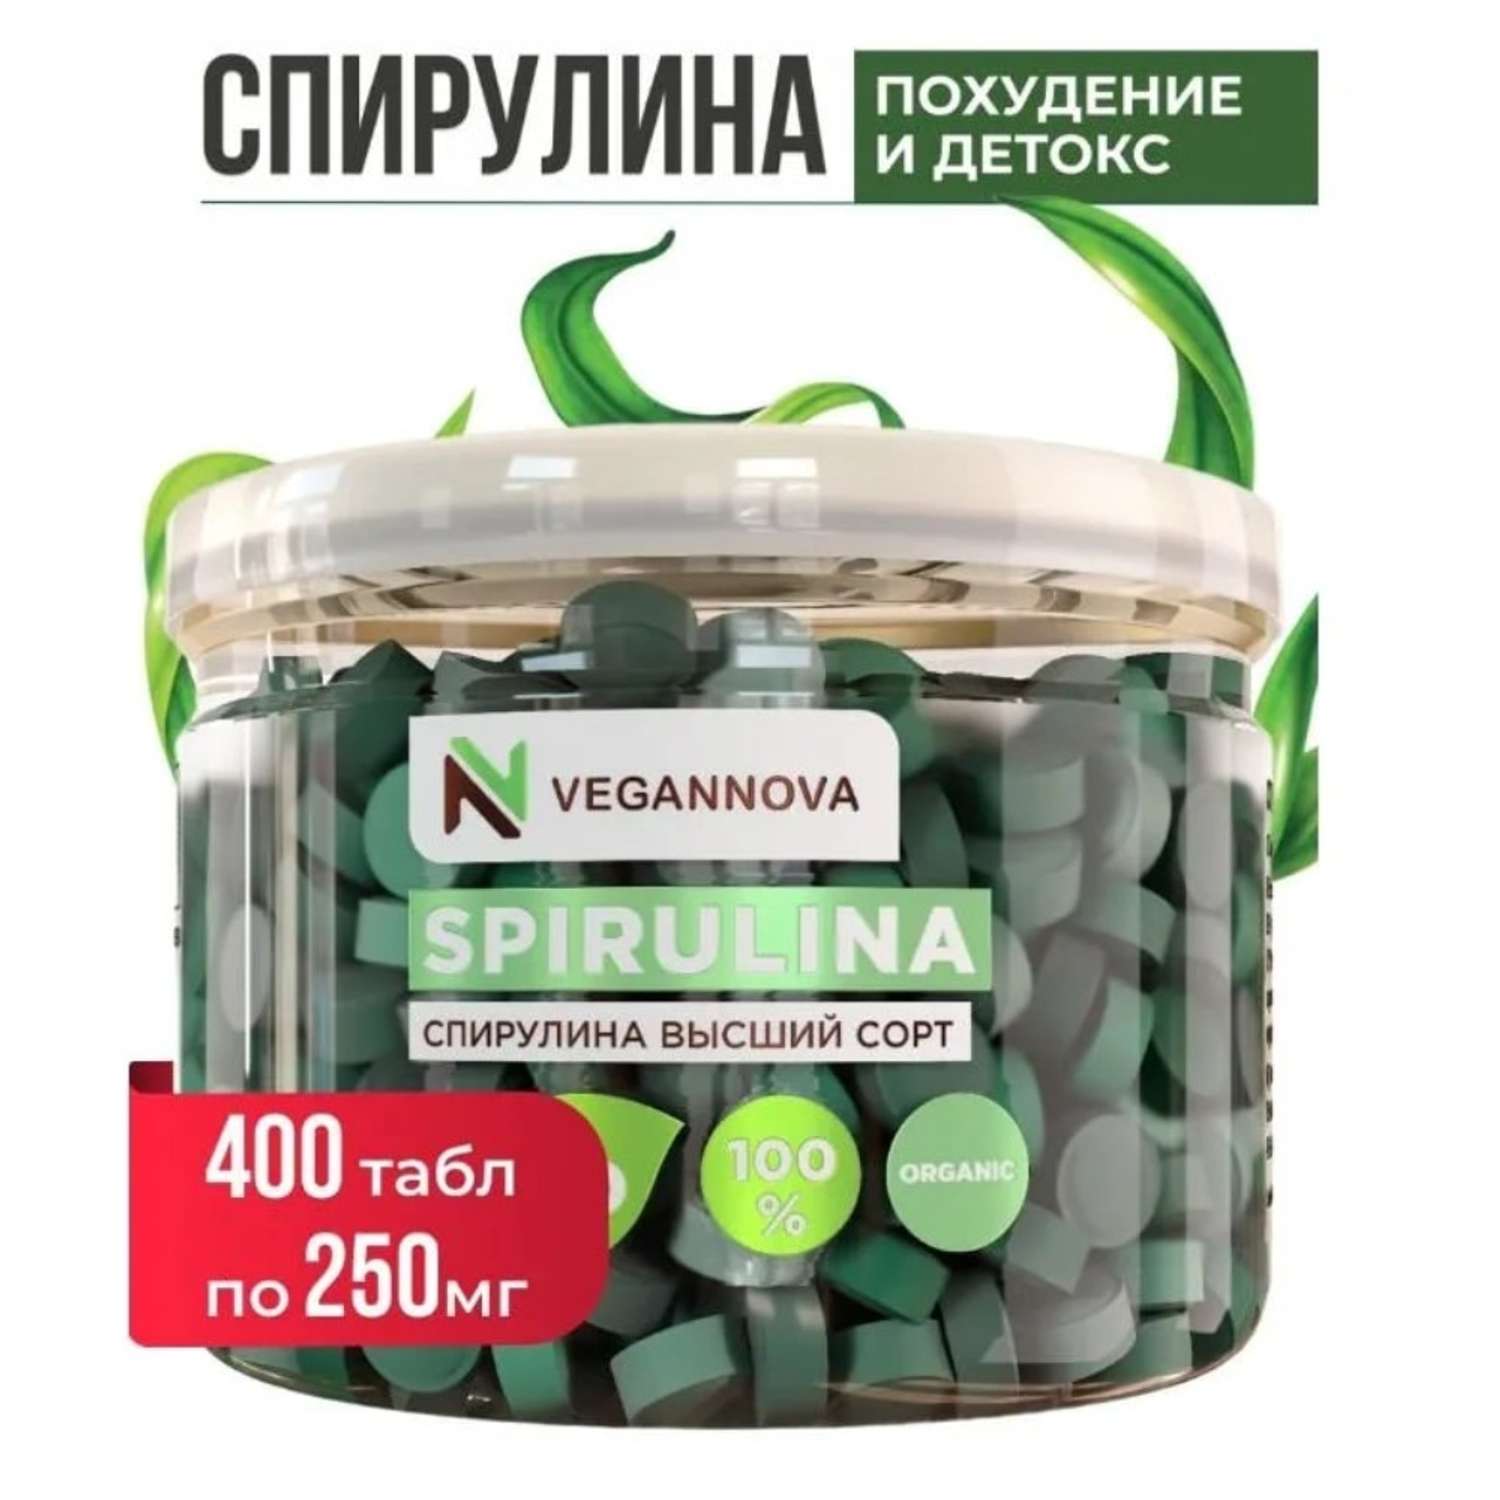 Спирулина VeganNova в таблетках 100 гр таблетки для похудения Детокс снижения веса Суперфуд здоровое питание - фото 1